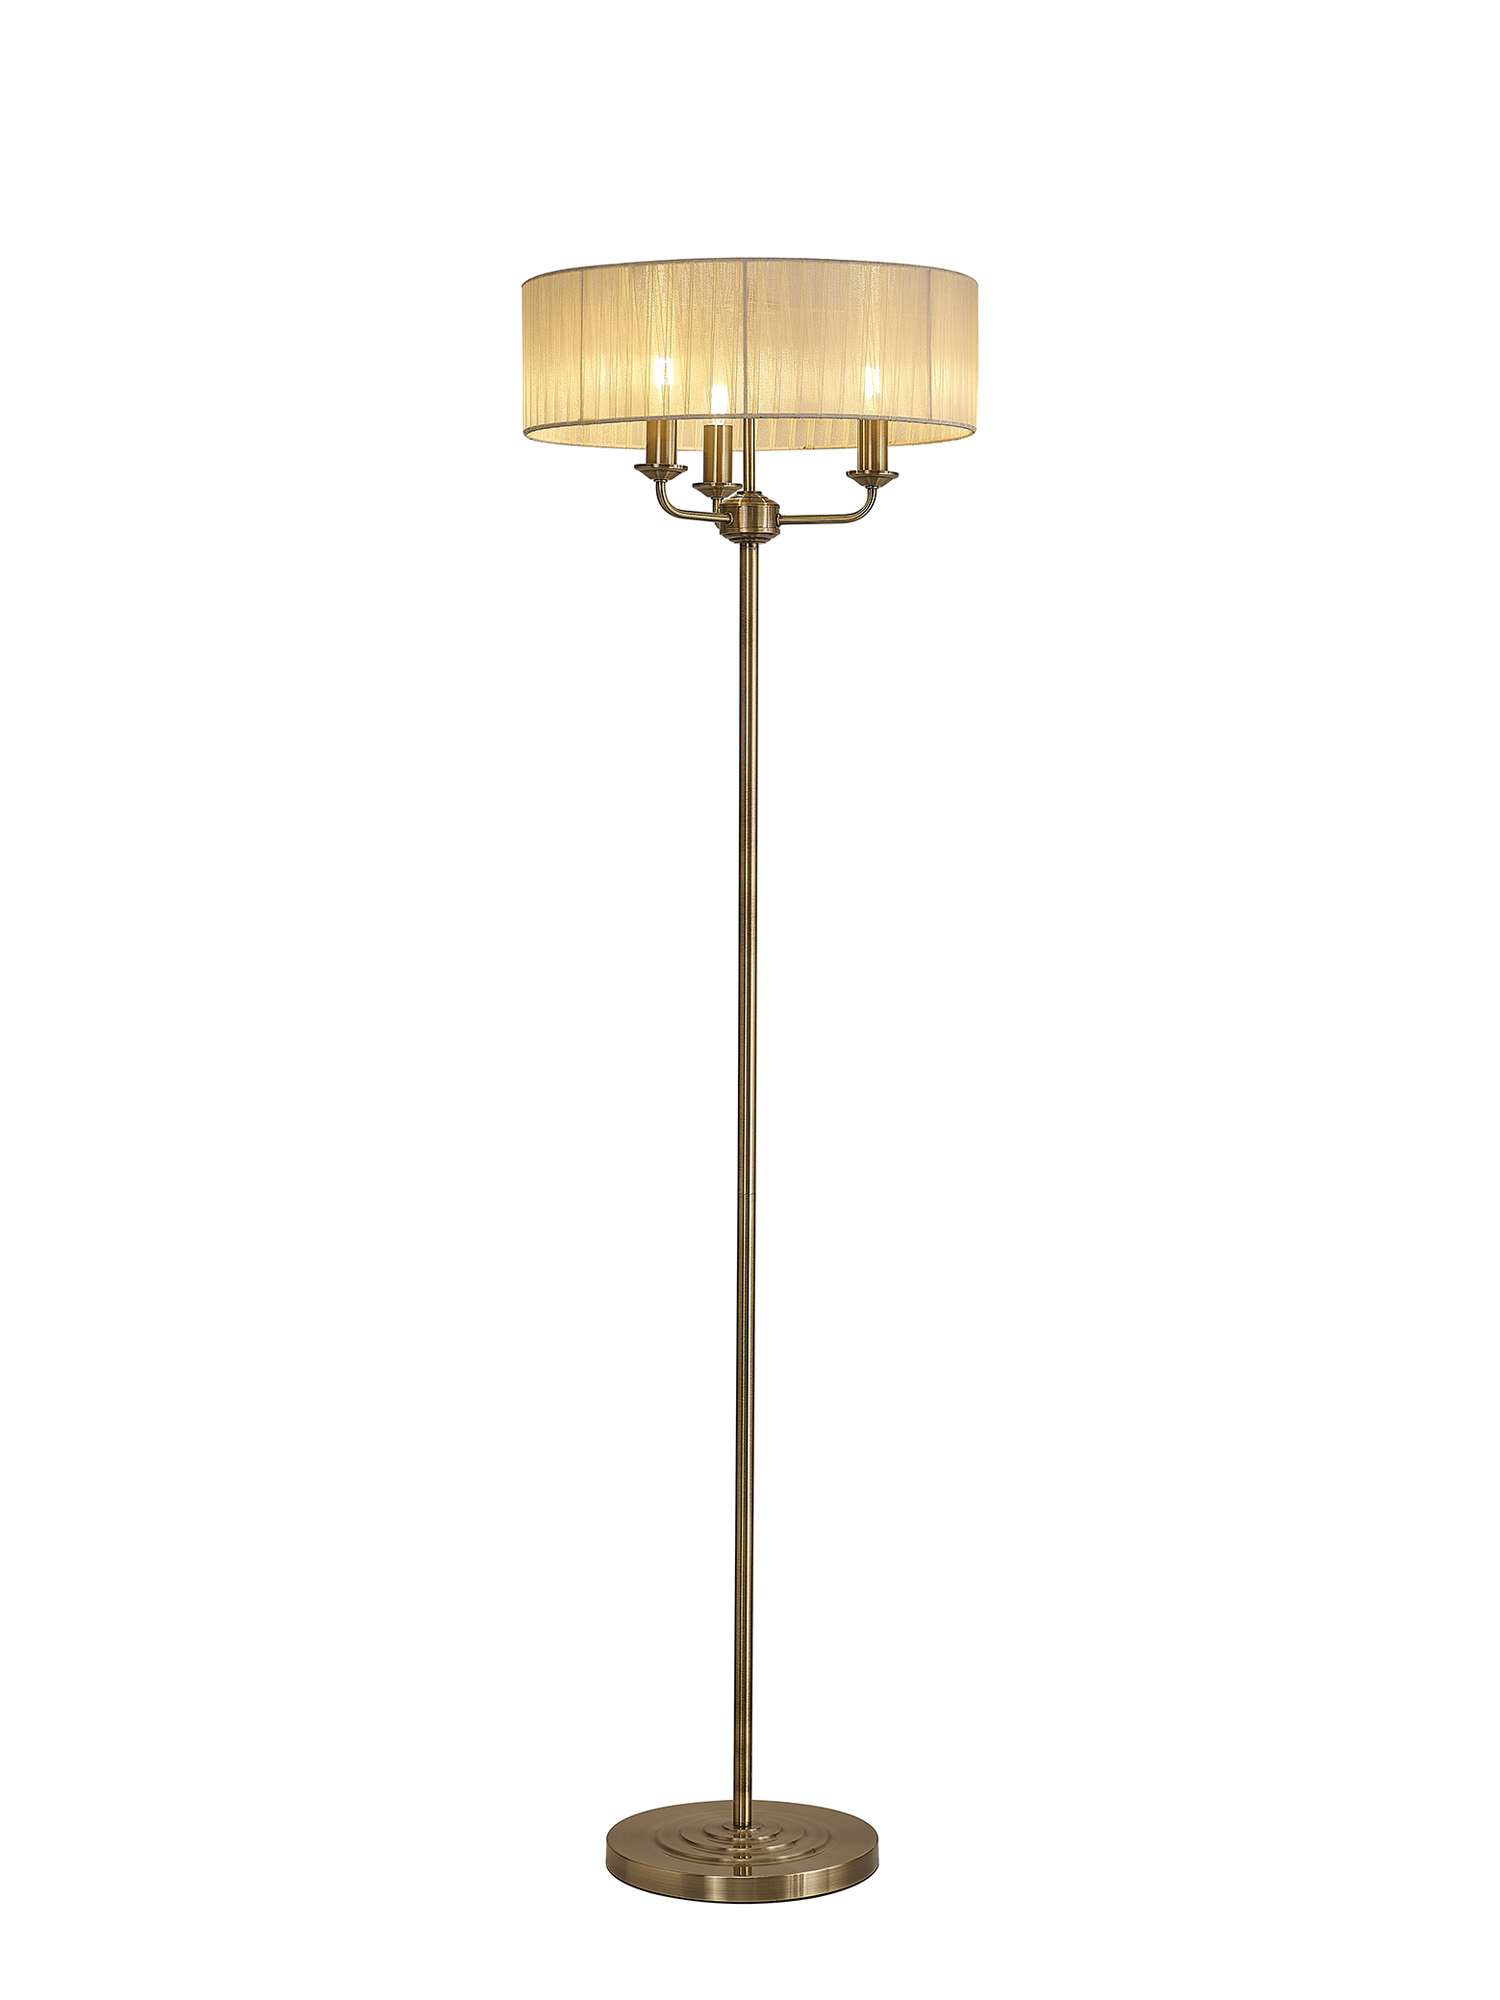 DK0907  Banyan 45cm 3 Light Floor Lamp Antique Brass, Cream